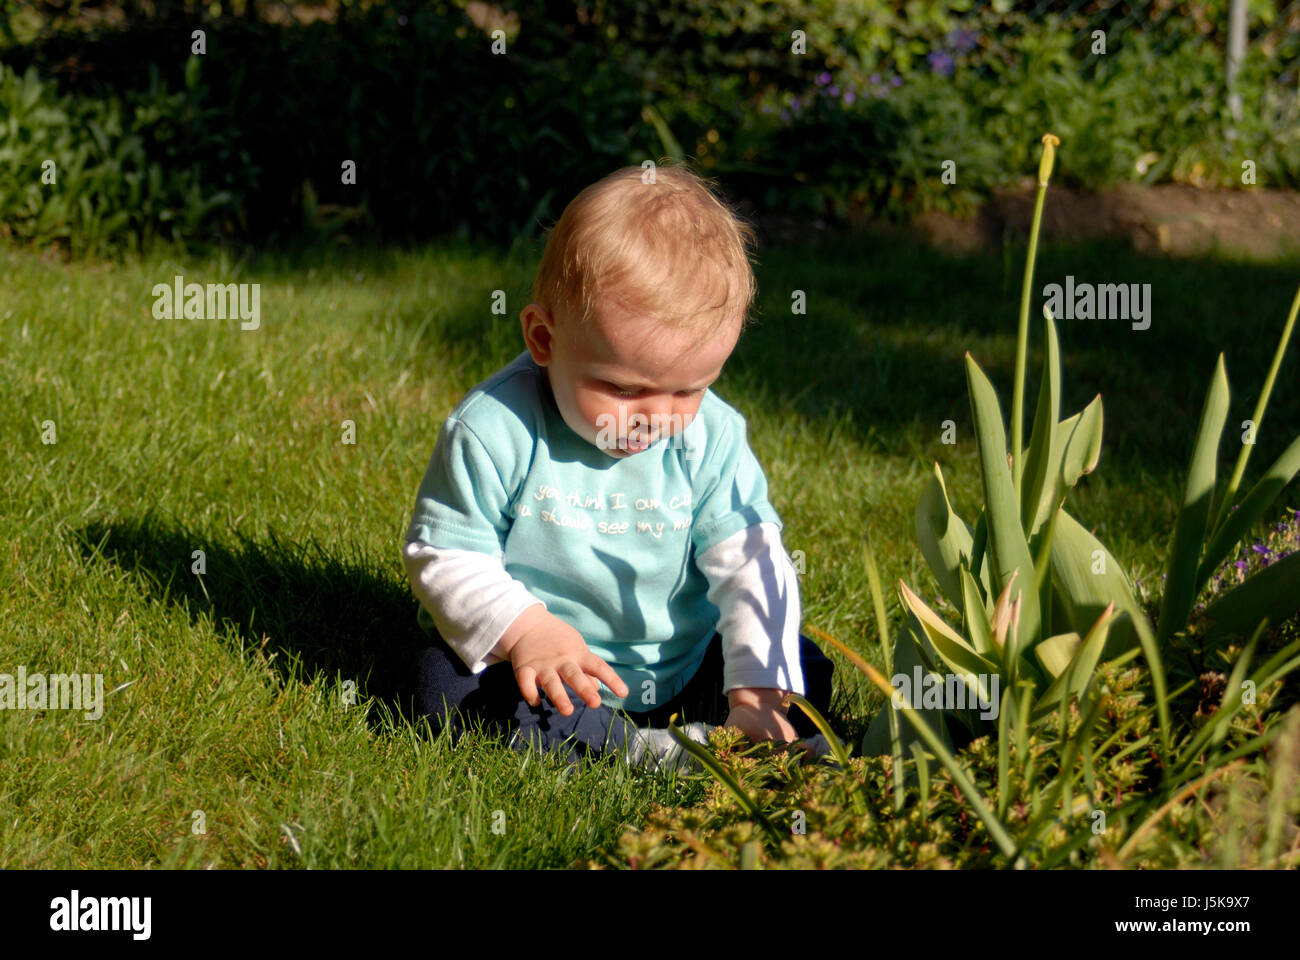 Tournoi de jeu jouer jouer joue joué vert plante de jardin jardins bébé Banque D'Images